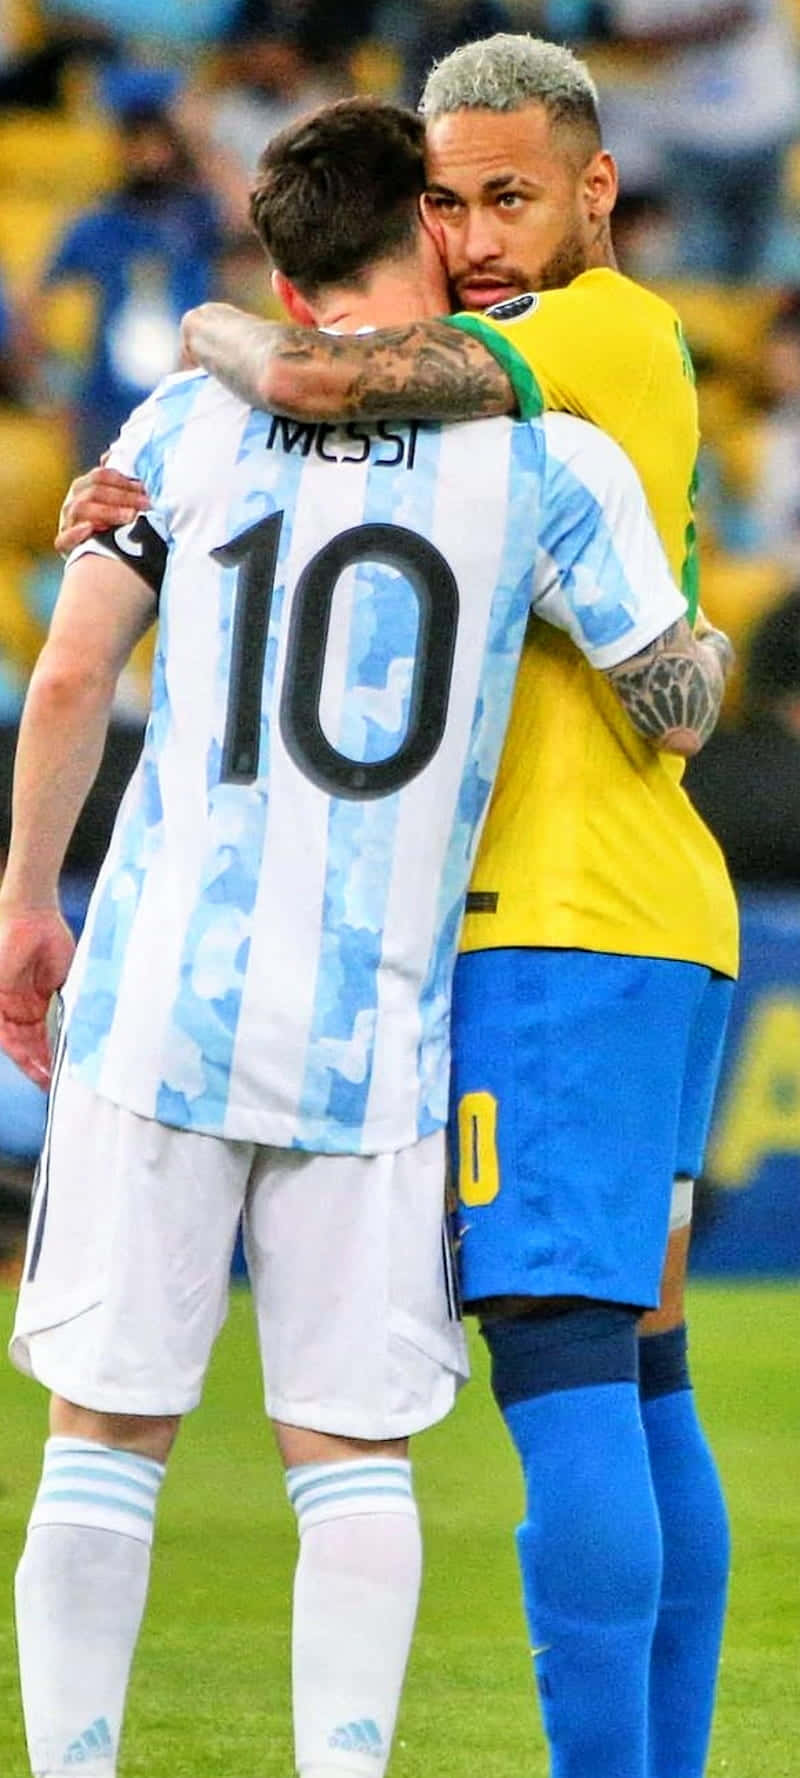 Hai ngôi sao bóng đá Neymar và Messi sẽ làm bạn thích thú khi xem hình ảnh của họ. Những pha đi bóng đẳng cấp và những cú sút chính xác sẽ khiến bạn muốn thêm nhiều lần xem nữa.